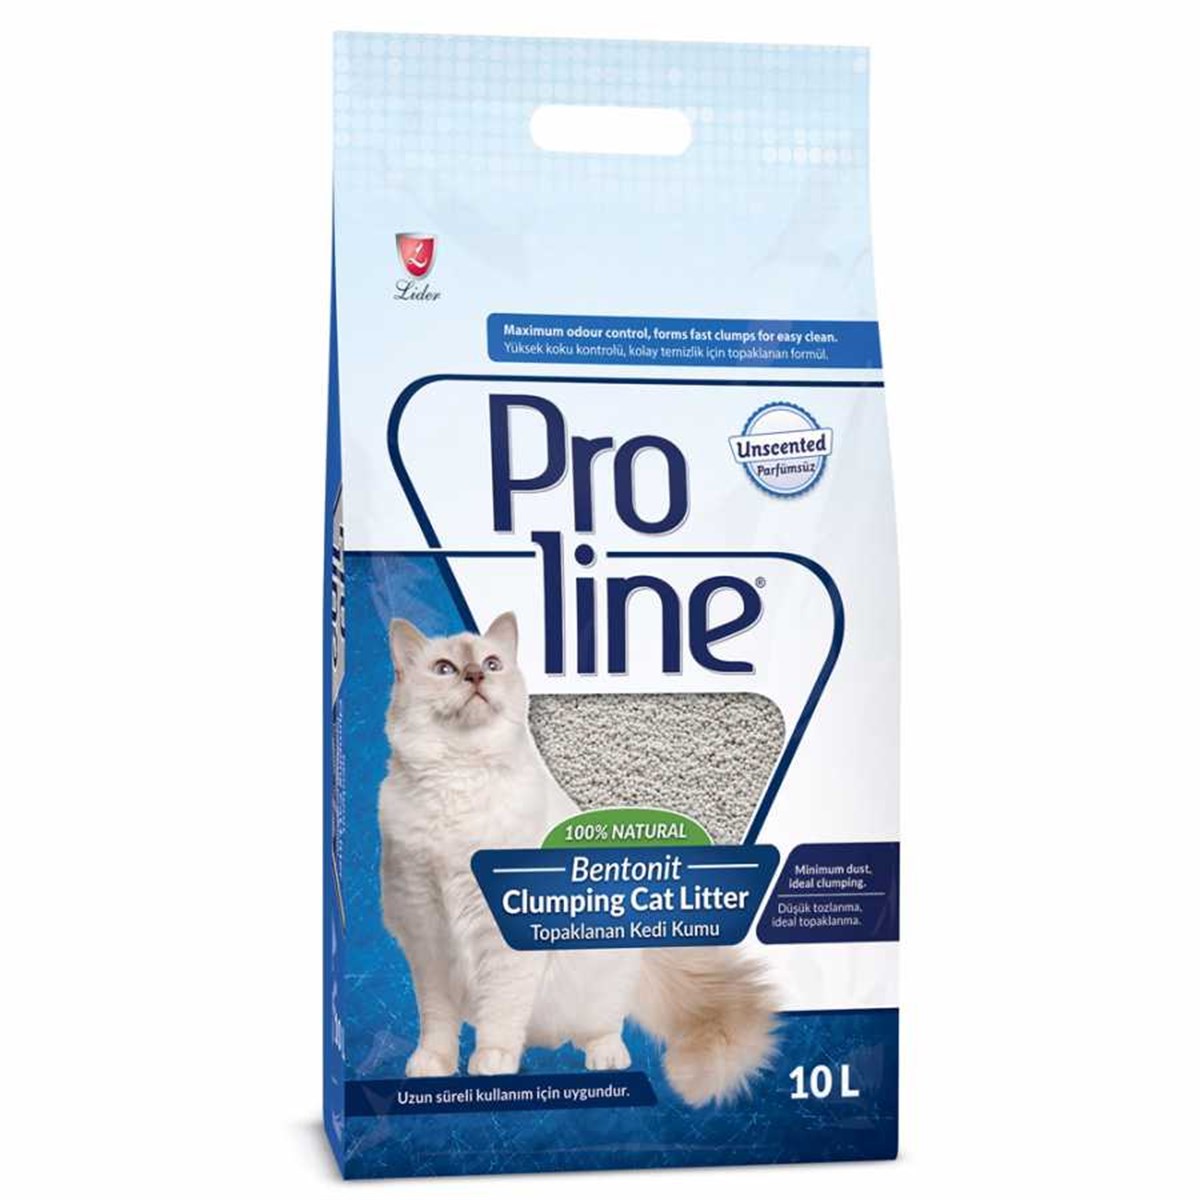 Pro Line Clumping Cat Litter Topaklanan Kedi Kumu 10 Litre